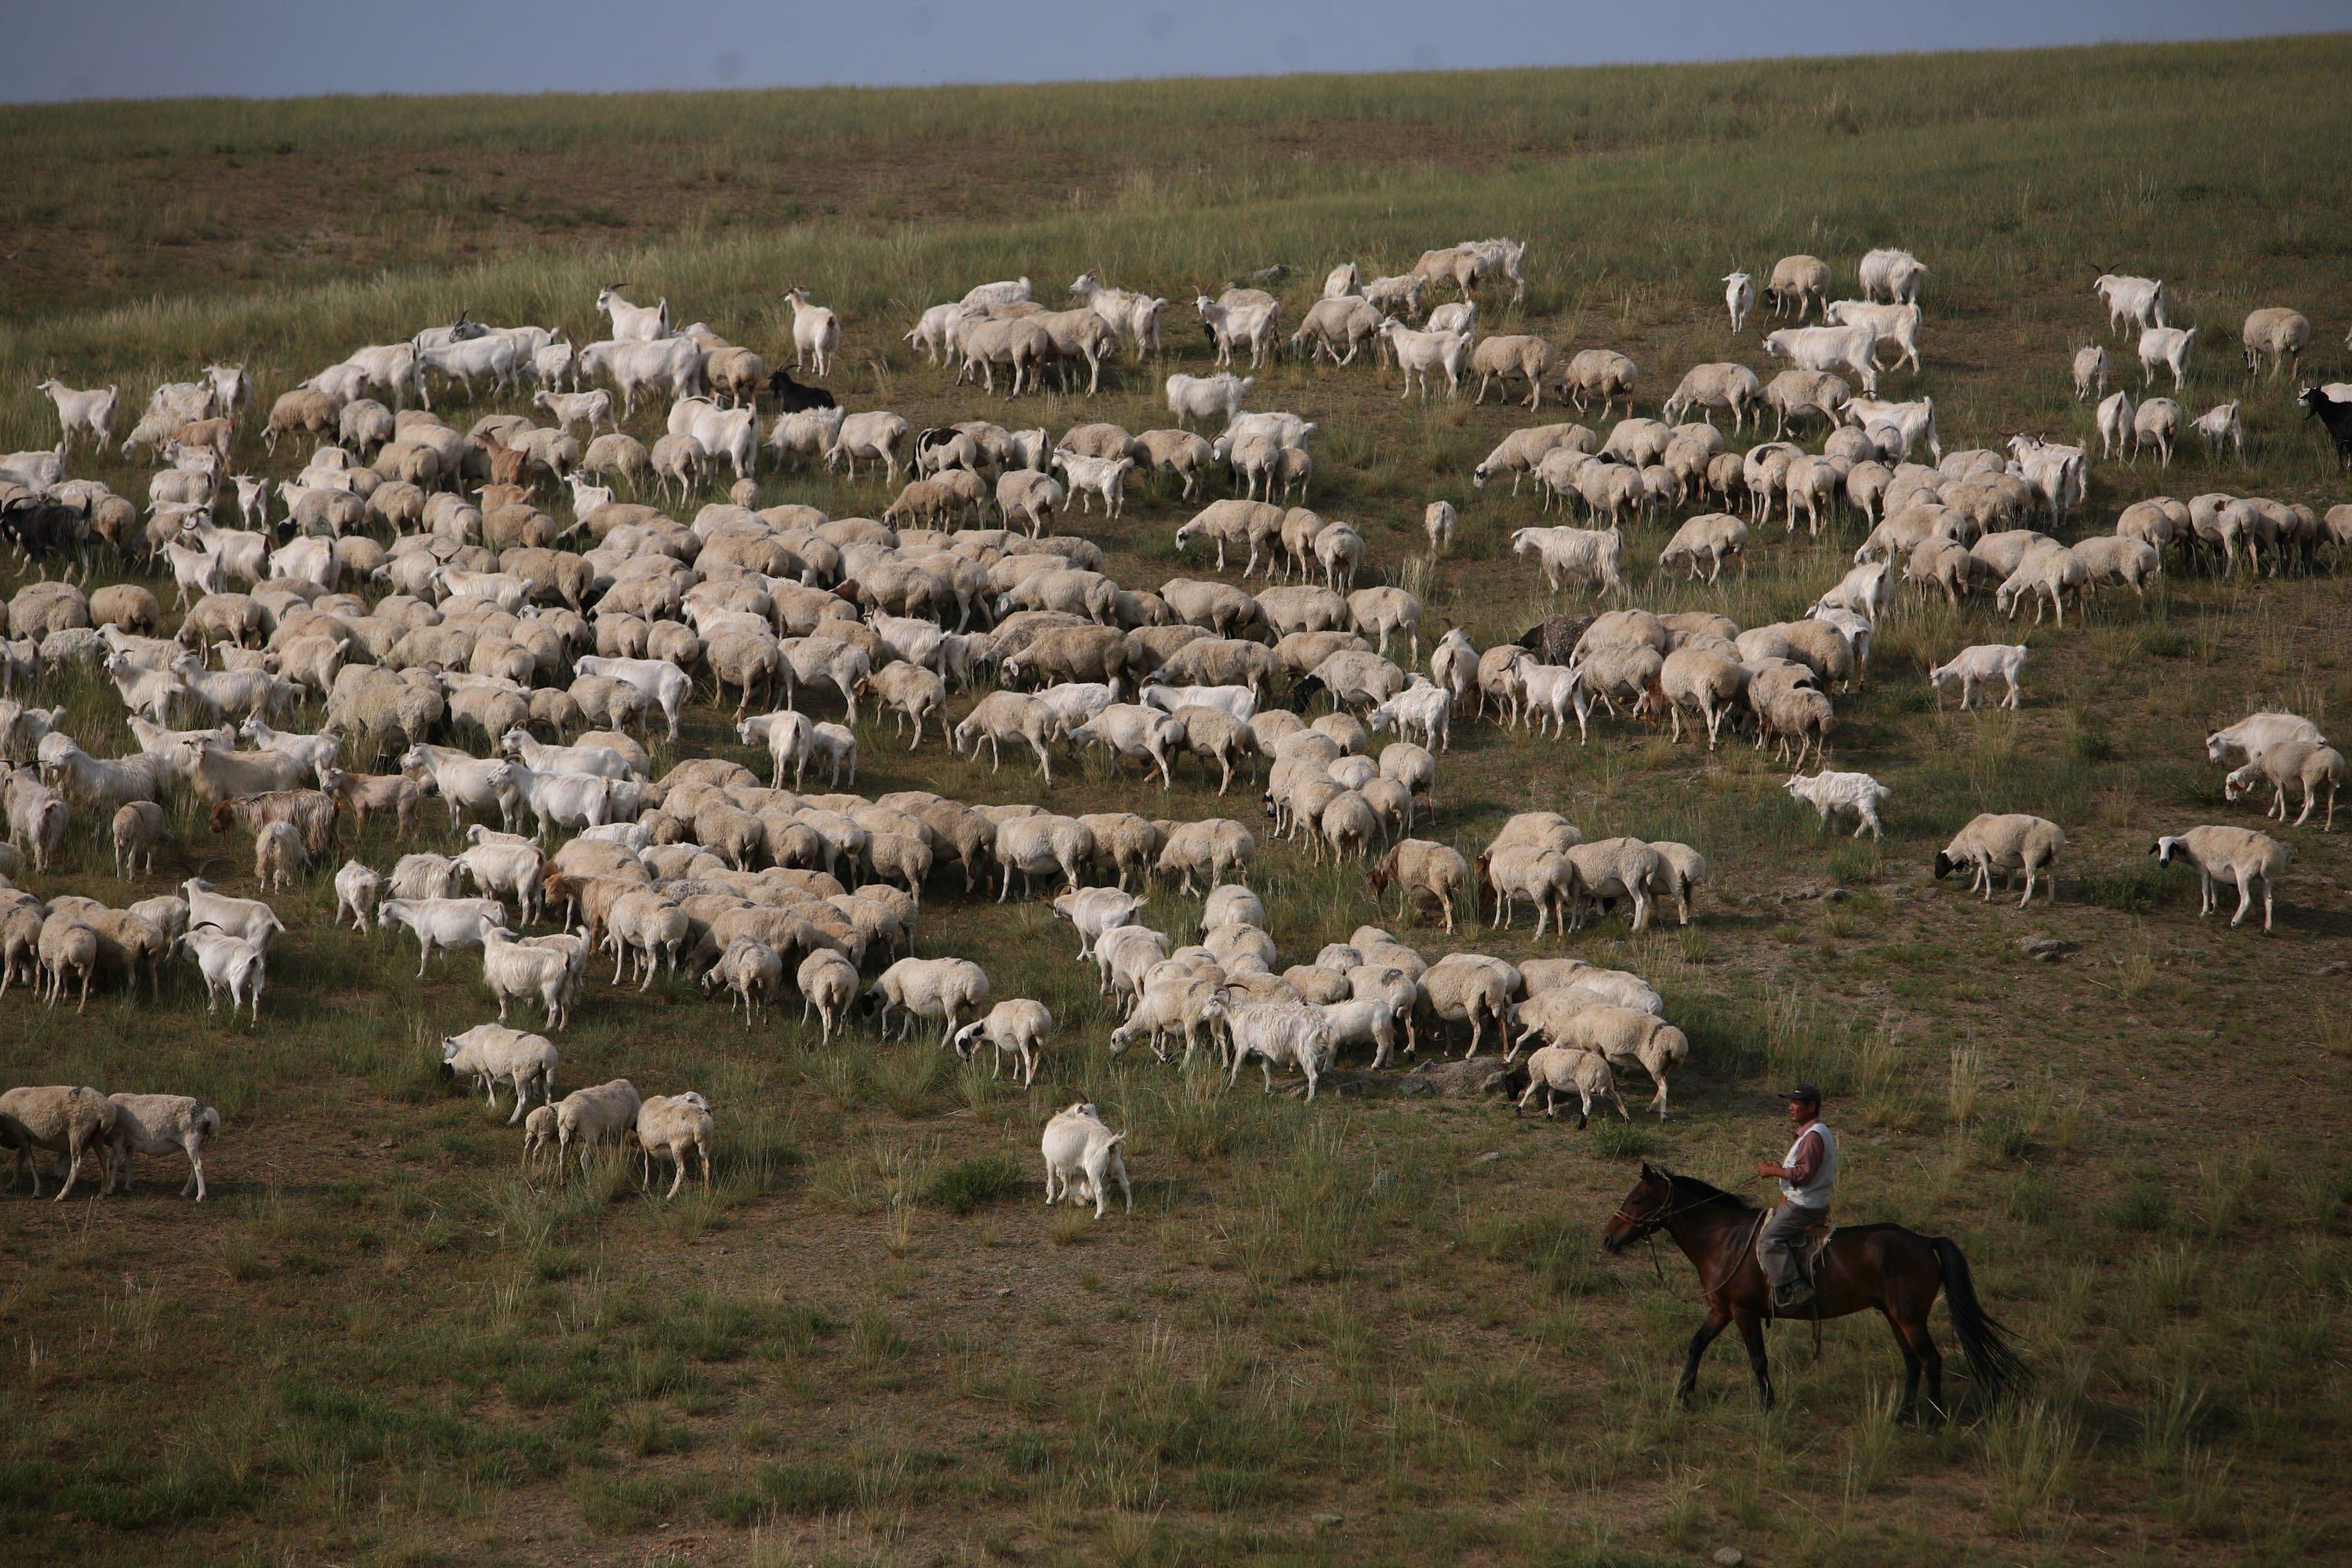 Mongoliska herdar i Xilinhot, Inre Mongoliet, Kina. Den kinesiska regimen började nyligen riva mongoliska herdars bostäder i Alxa-förbundet i västra Inre Mongoliet i ett så kallat "uppgraderingsprojekt". (Foto: China Photos/Getty Images)